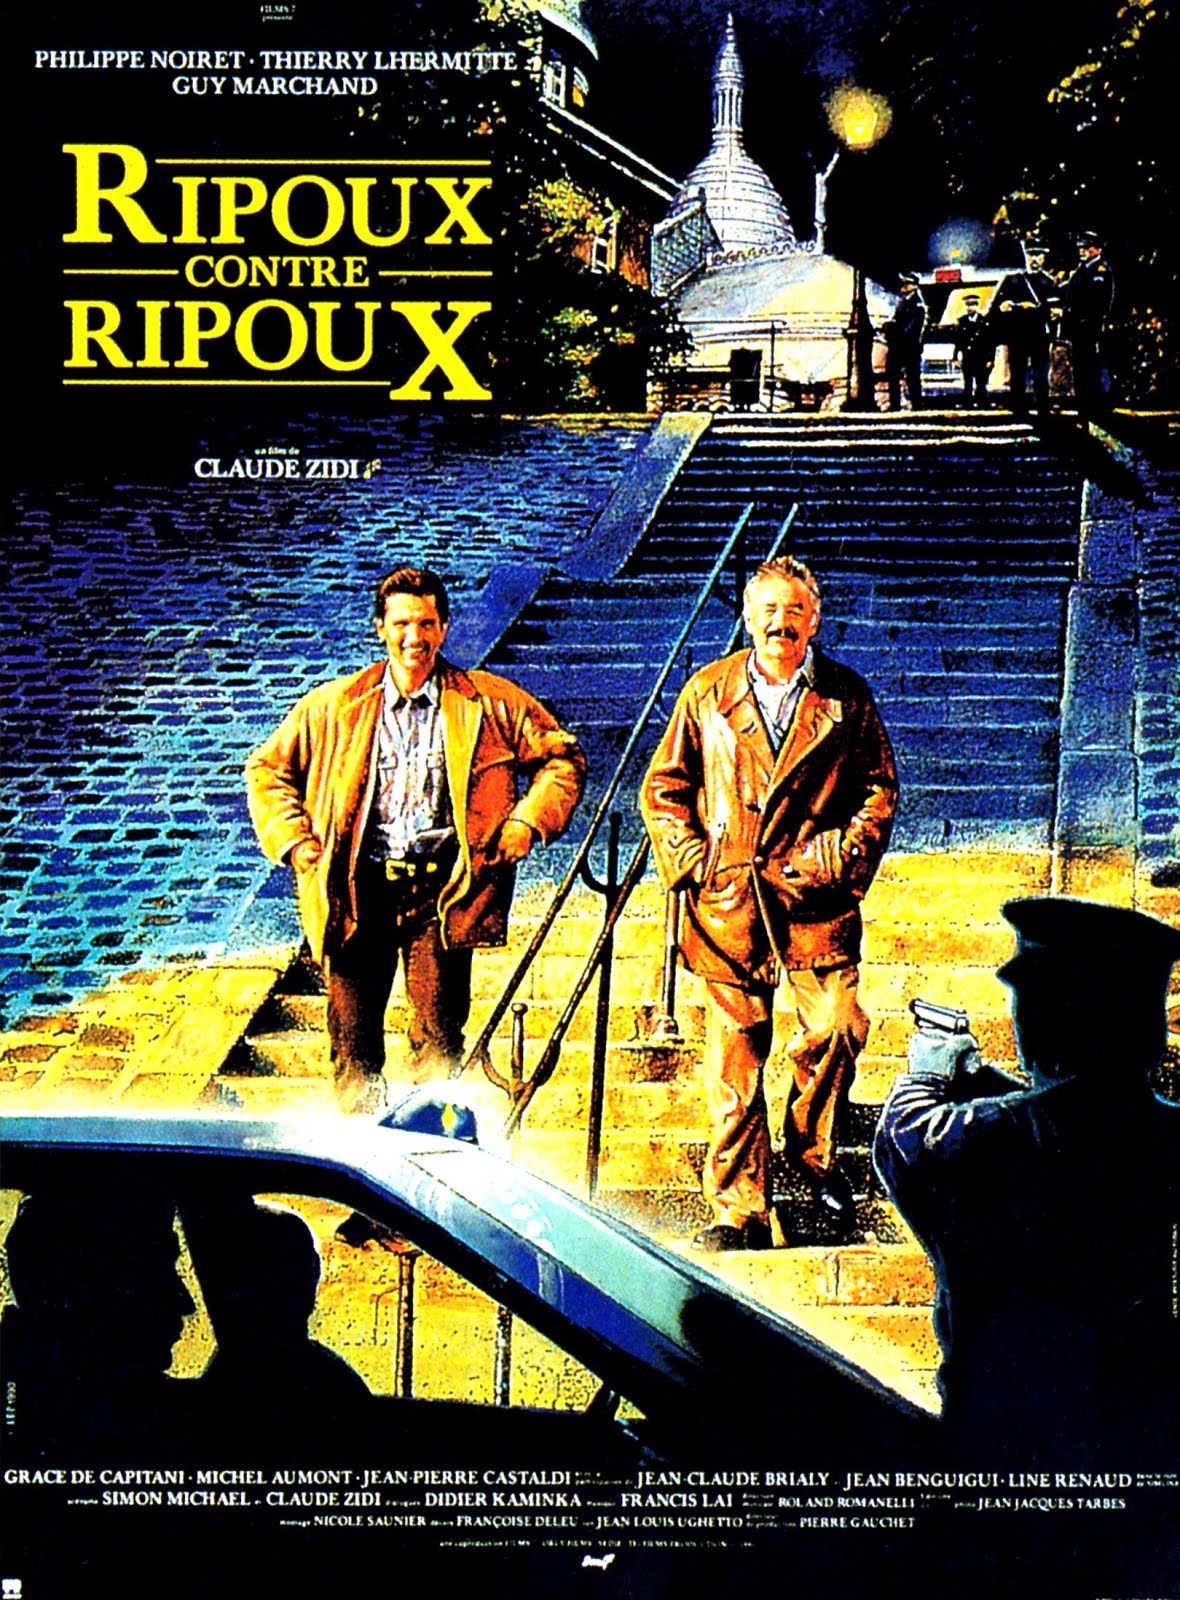 Ripoux contre ripoux (1989) Claude Zidi - Ripoux contre ripoux (04.09.1989 / 31.10.1989)